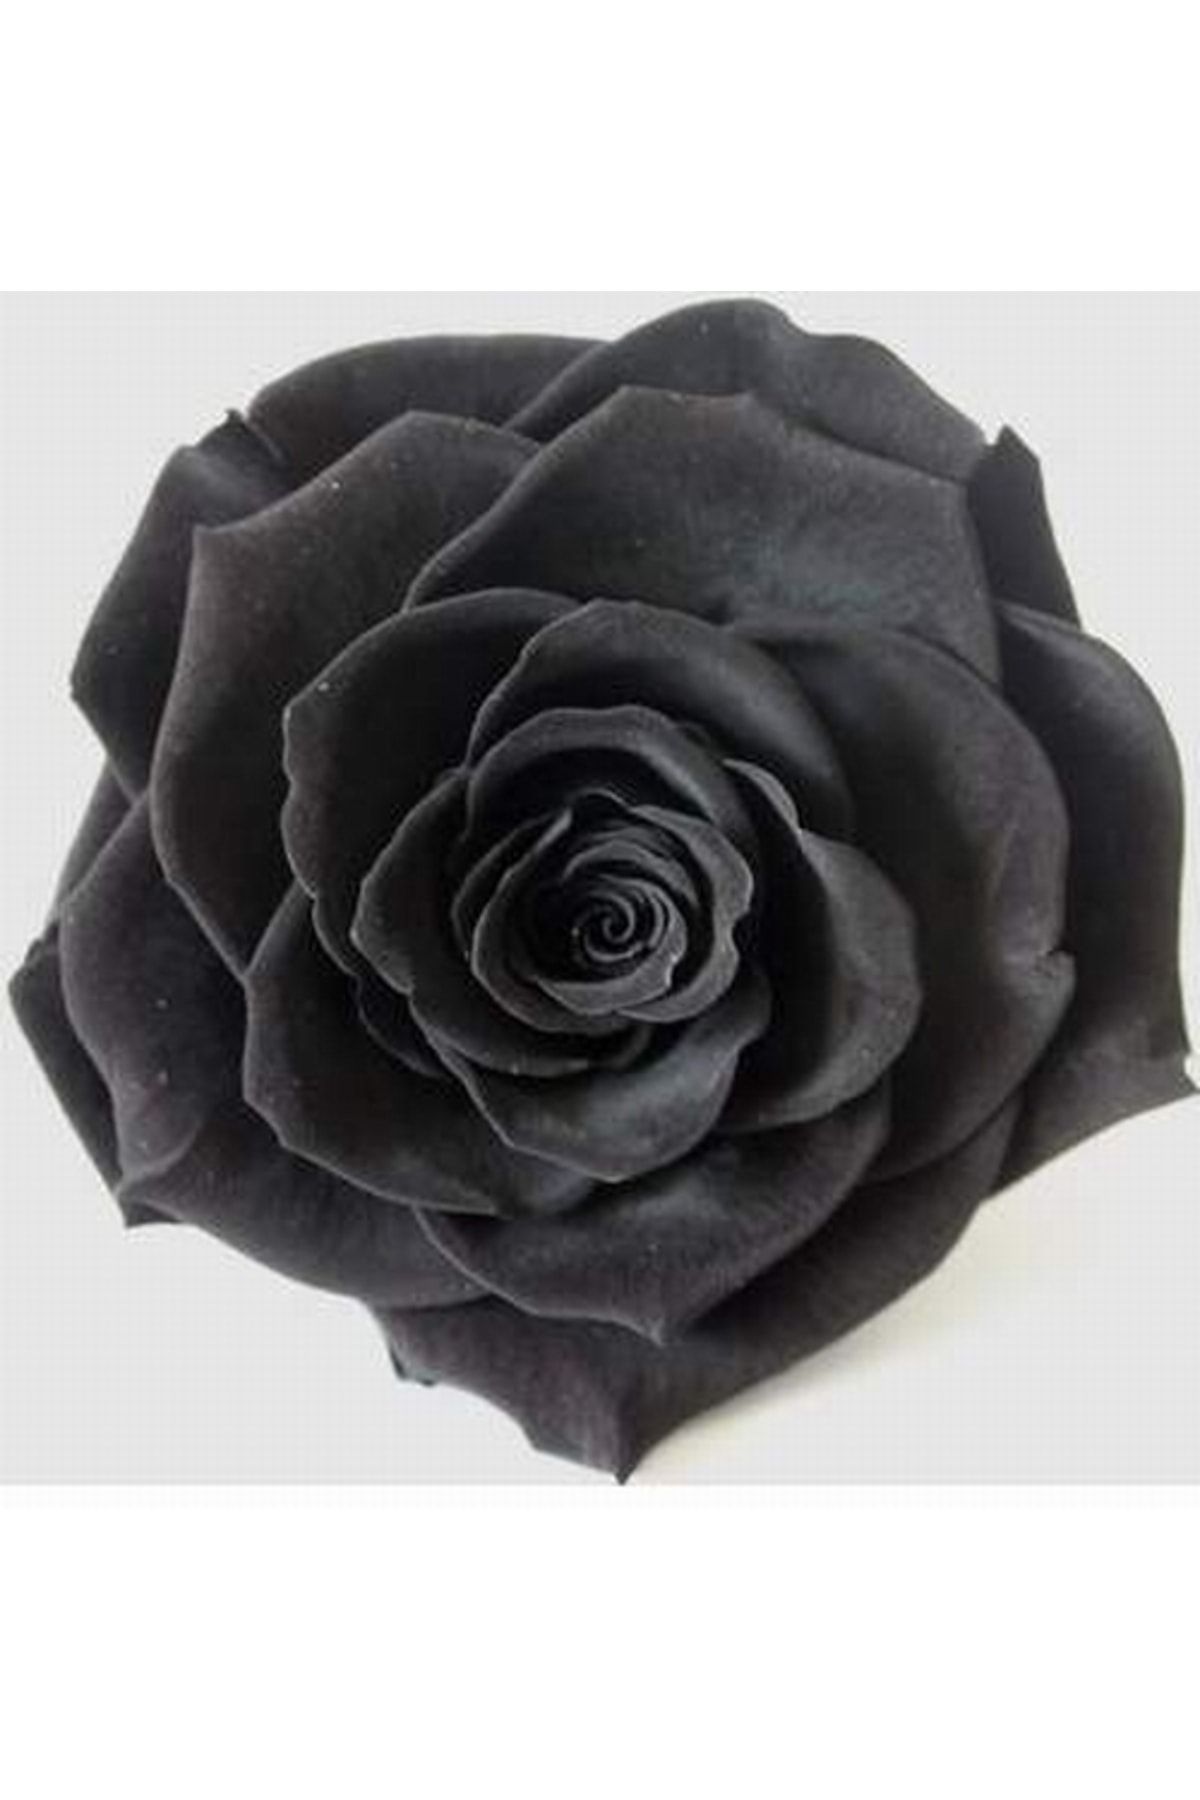 logitel 100 Adet Siyah Çin Gülü Tohumu +10 Adet Karışık Lale Çiçek Tohumu